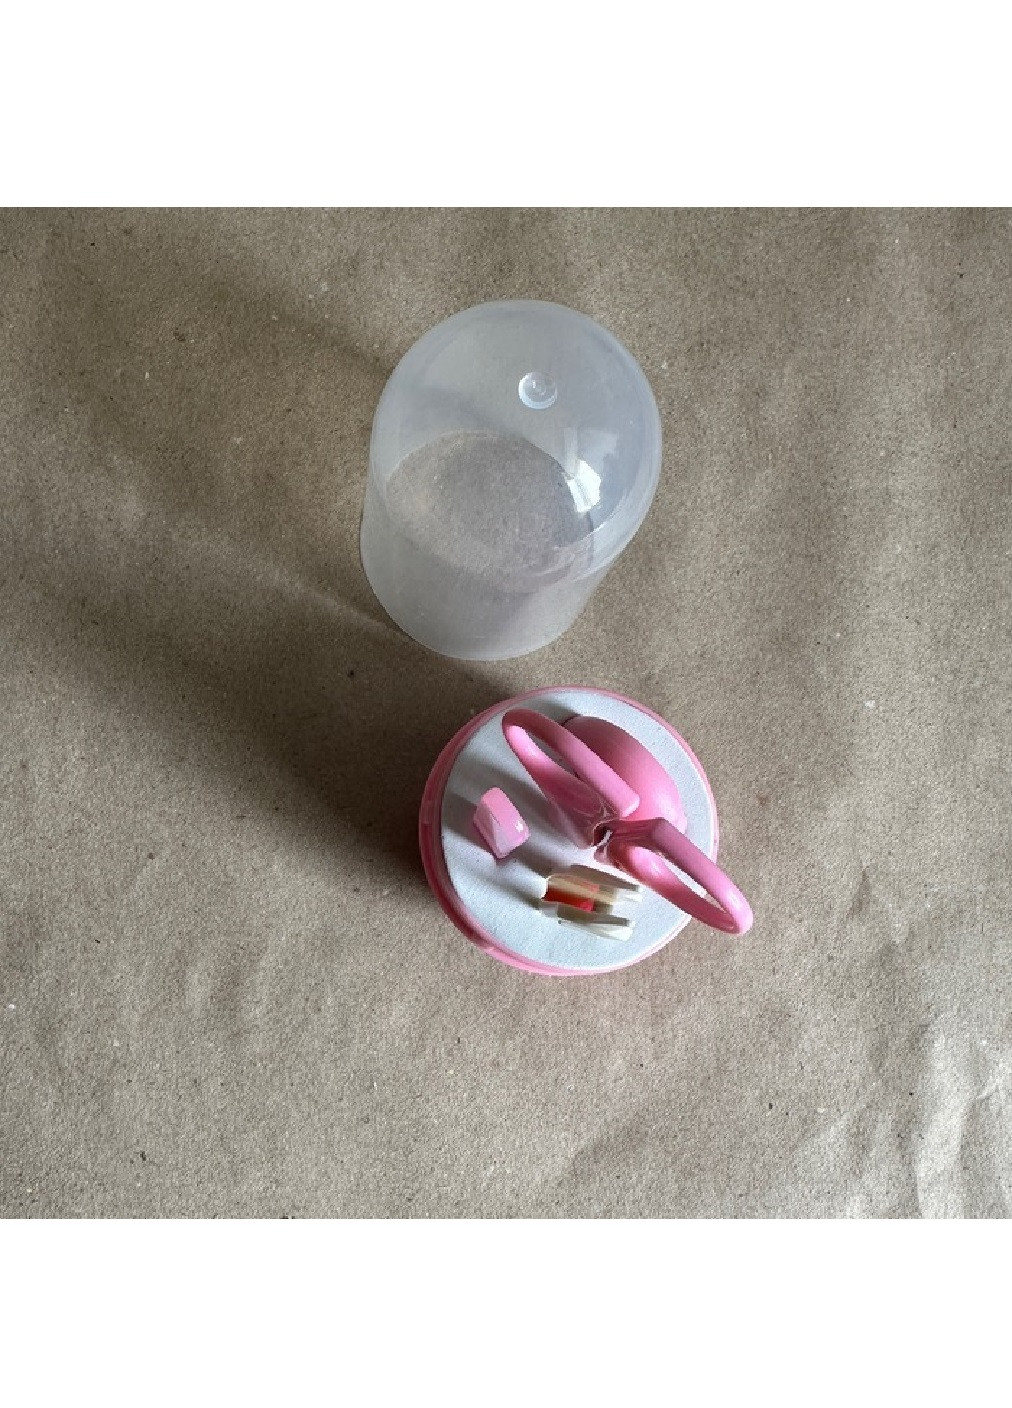 Детский маникюрный набор в прозрачном футляре капсуле с ножницами пинцетом пилочкой для детей малышей (475017-Prob) Розовый Unbranded (260668383)